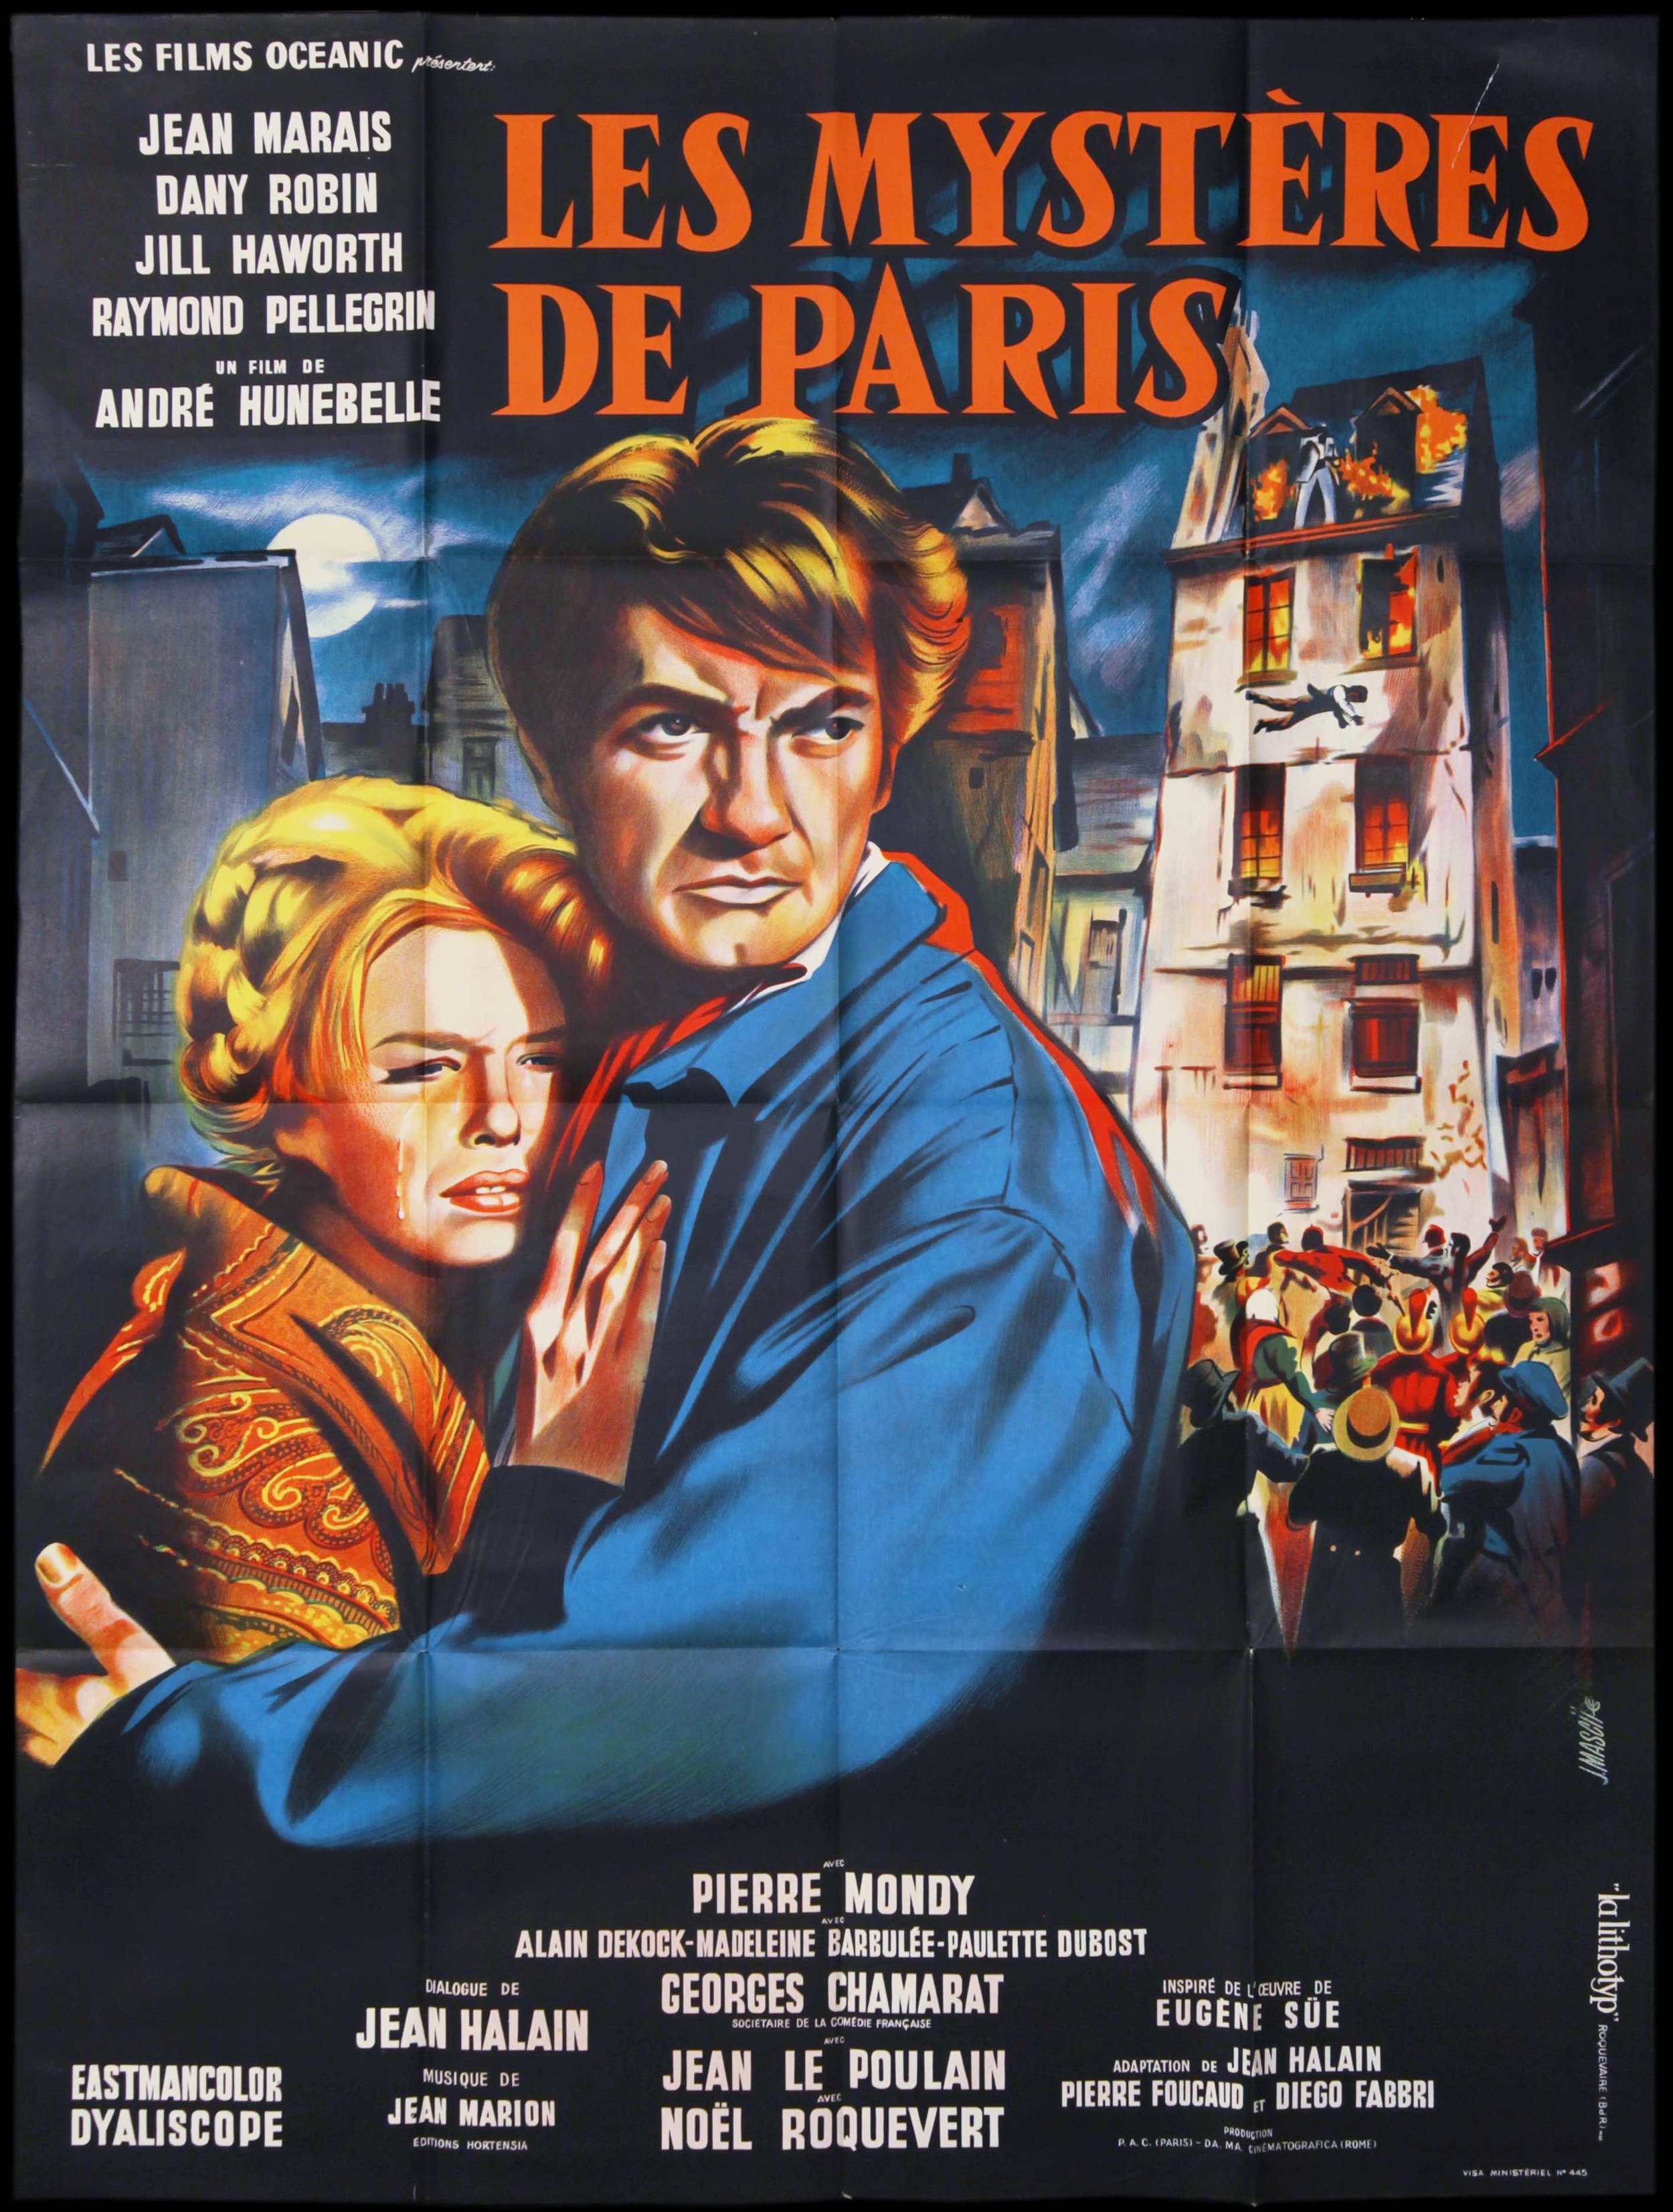 Le Mysteres De Paris (1962)